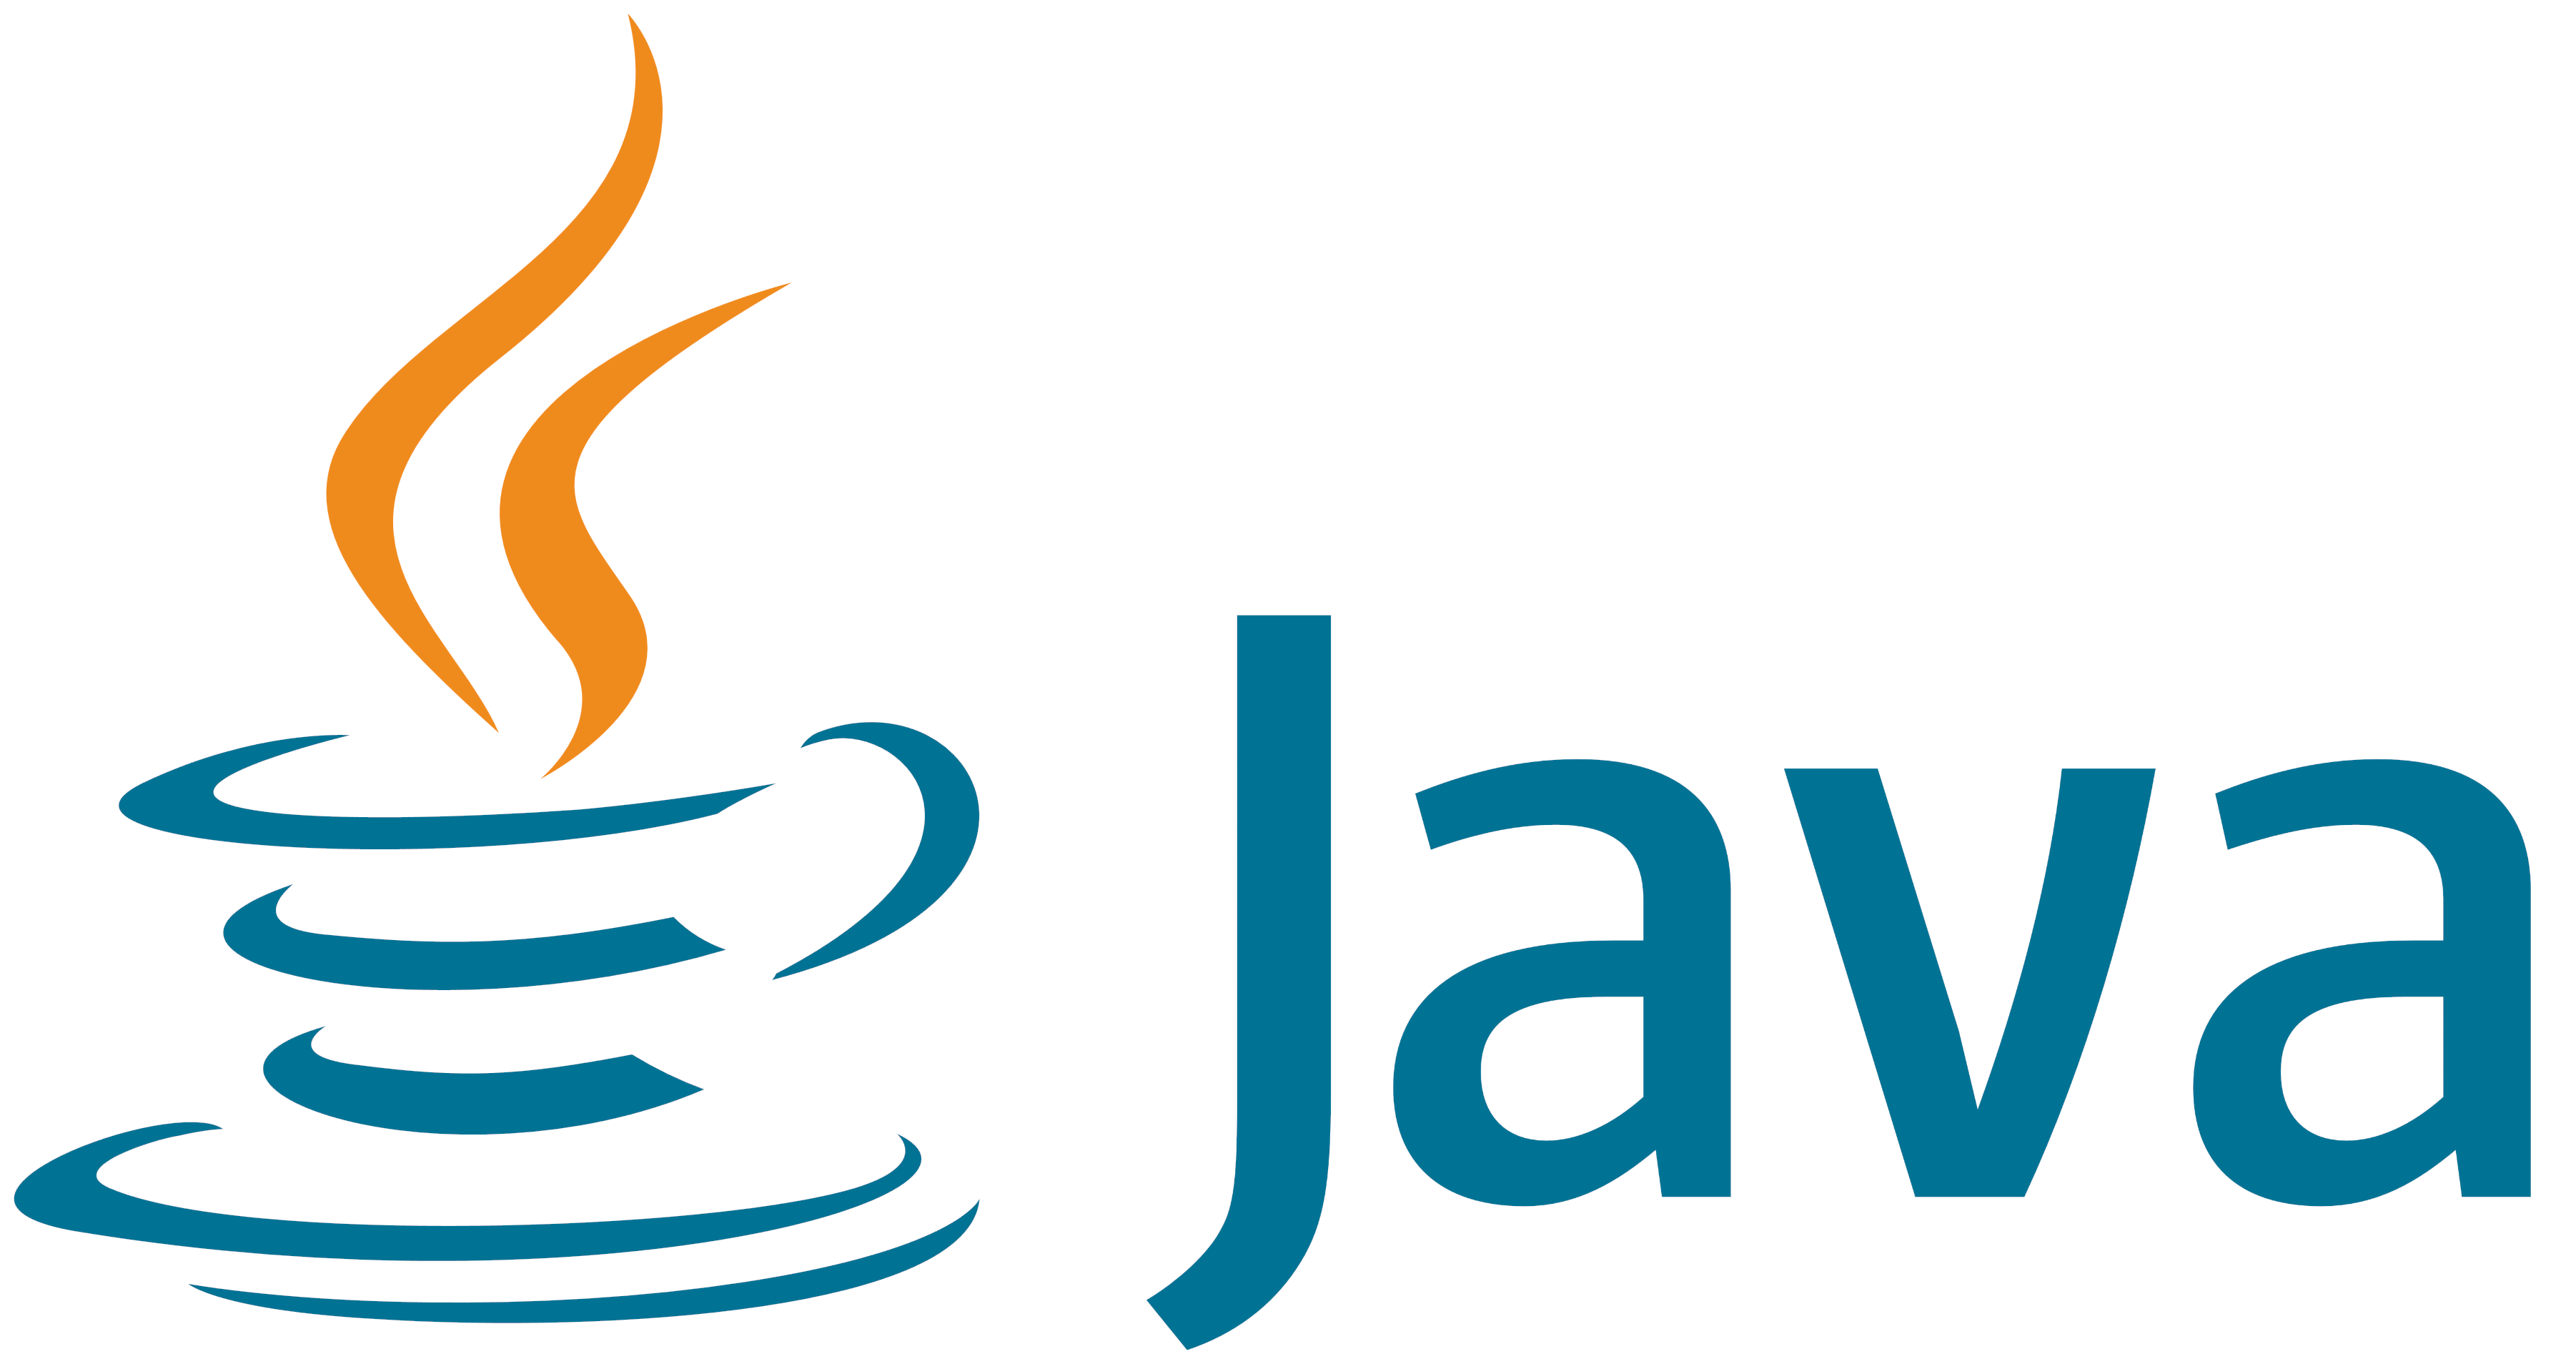 Java consumer. Java логотип. Язык программирования java. Java картинки. Java первый логотип.